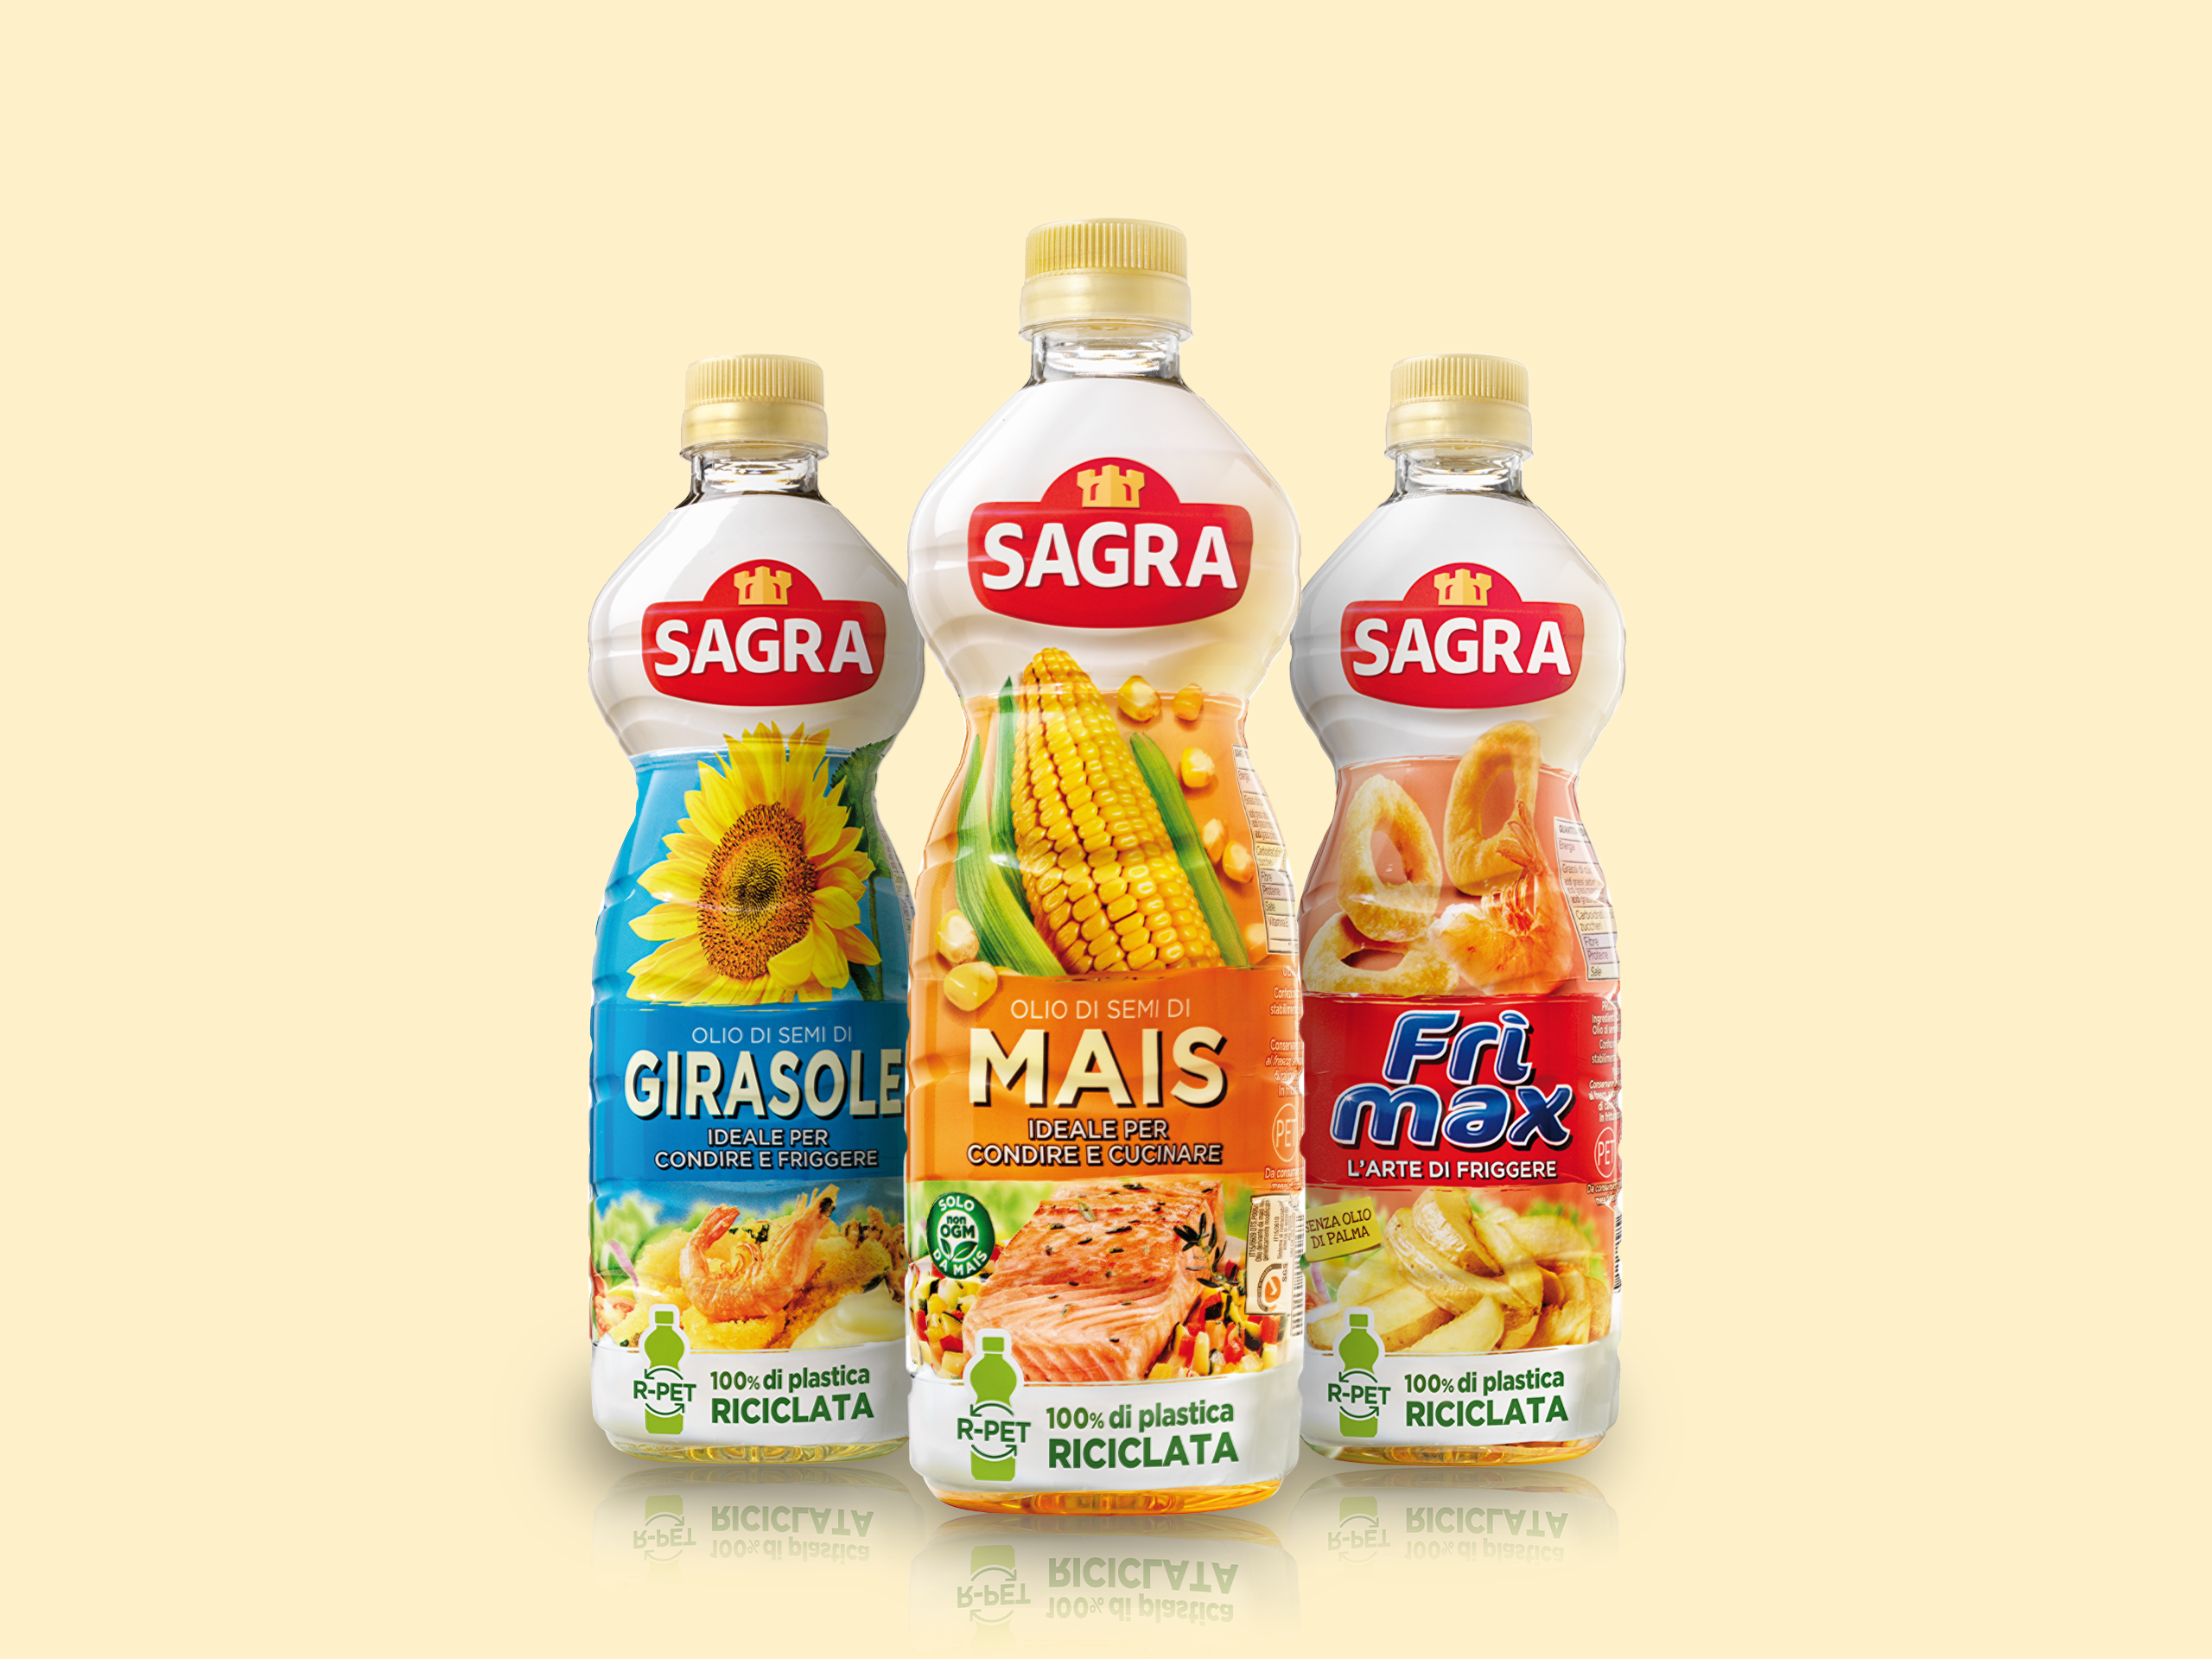 Olio Sagra presenta le nuove bottiglie in r-PET realizzate con il 100% di plastica riciclata per la gamma di oli di semi